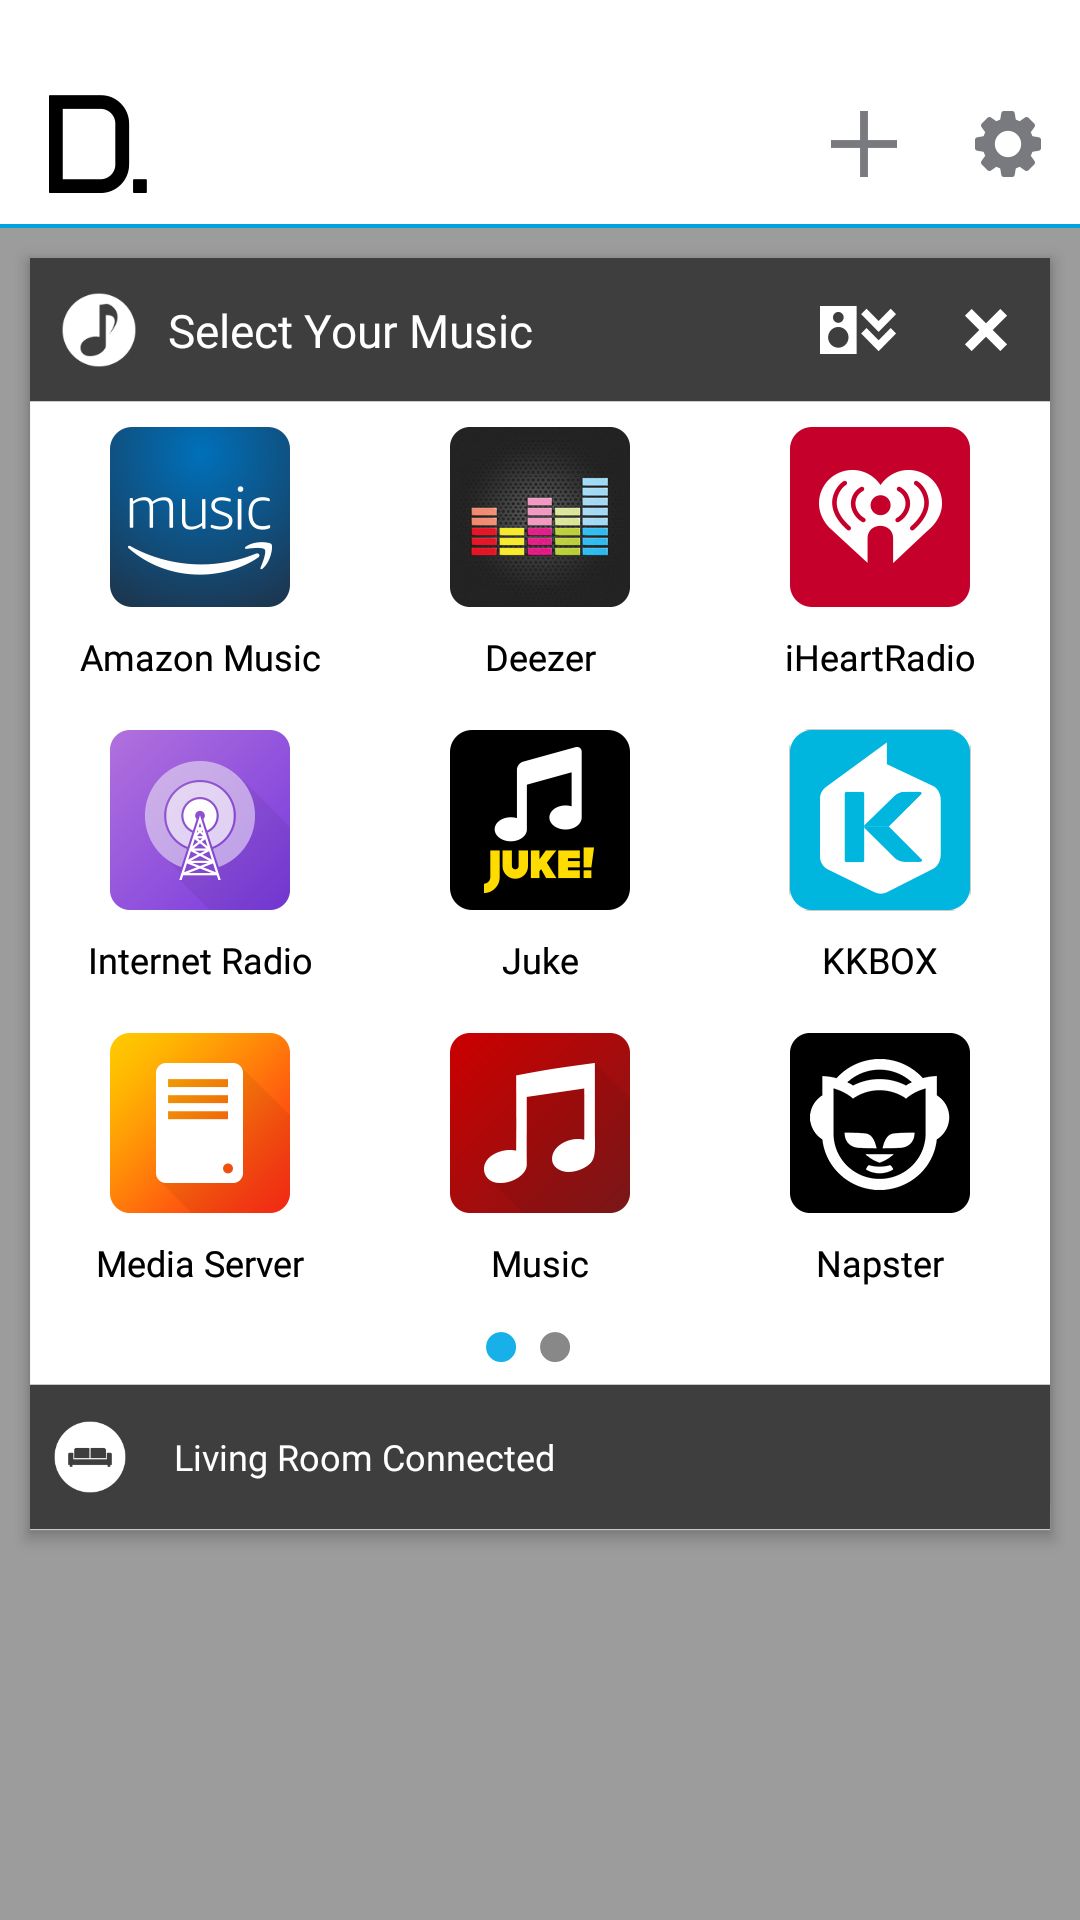 Główny ekran aplikacji mobilnej: tu wybieramy źródła muzyki